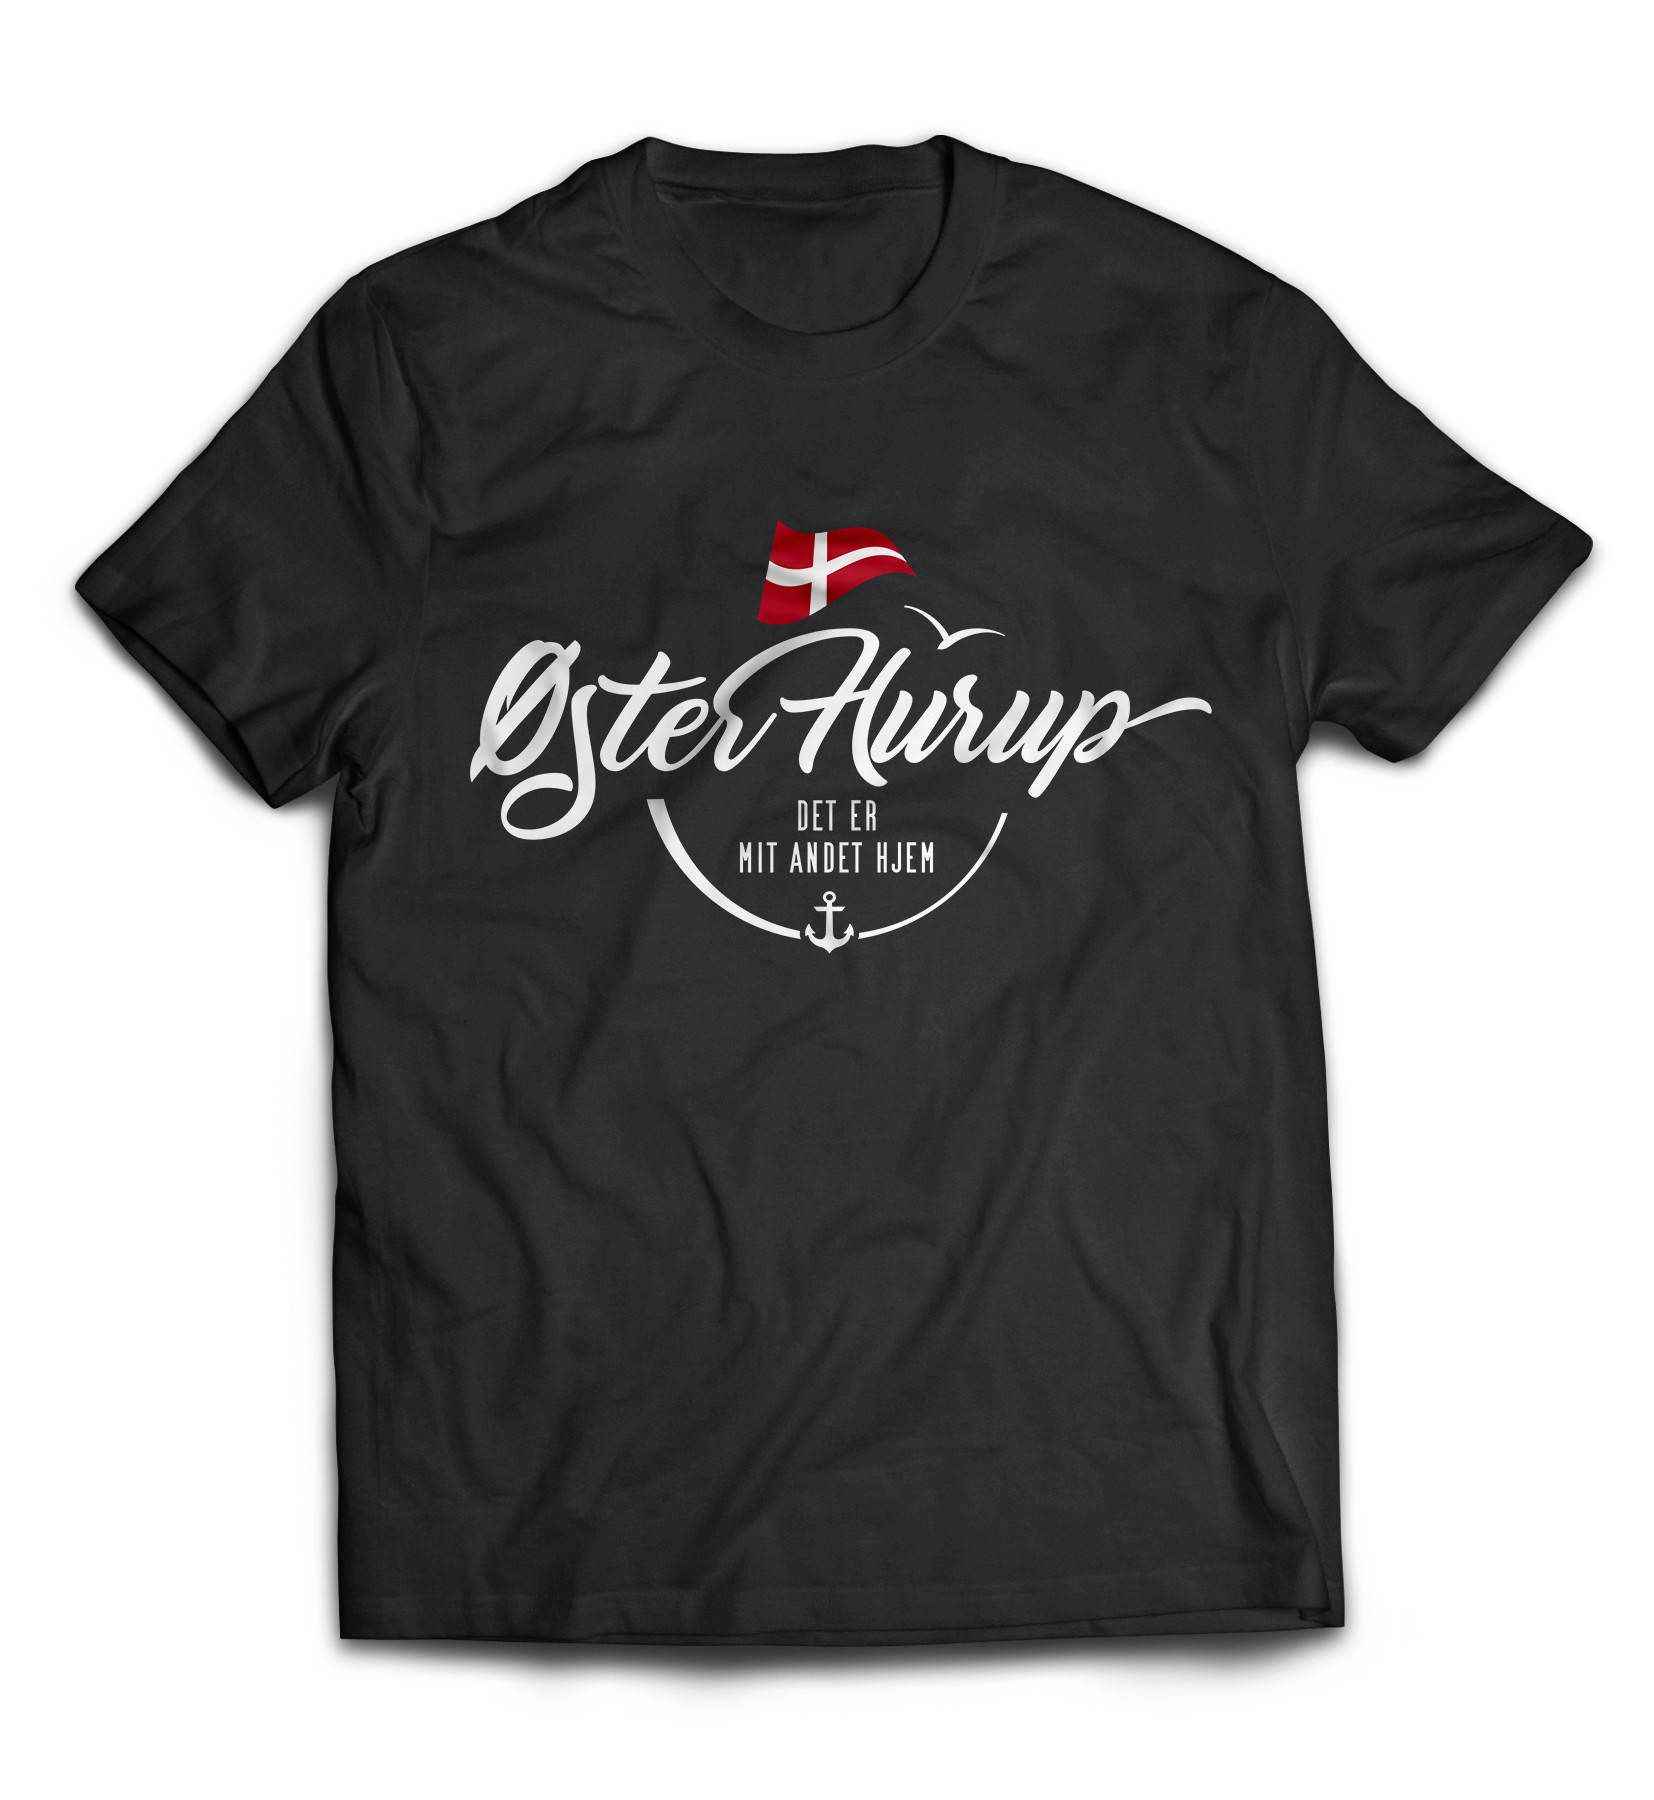 Dänemark - Meine zweite Heimat - T-Shirt "Øster Hurup"